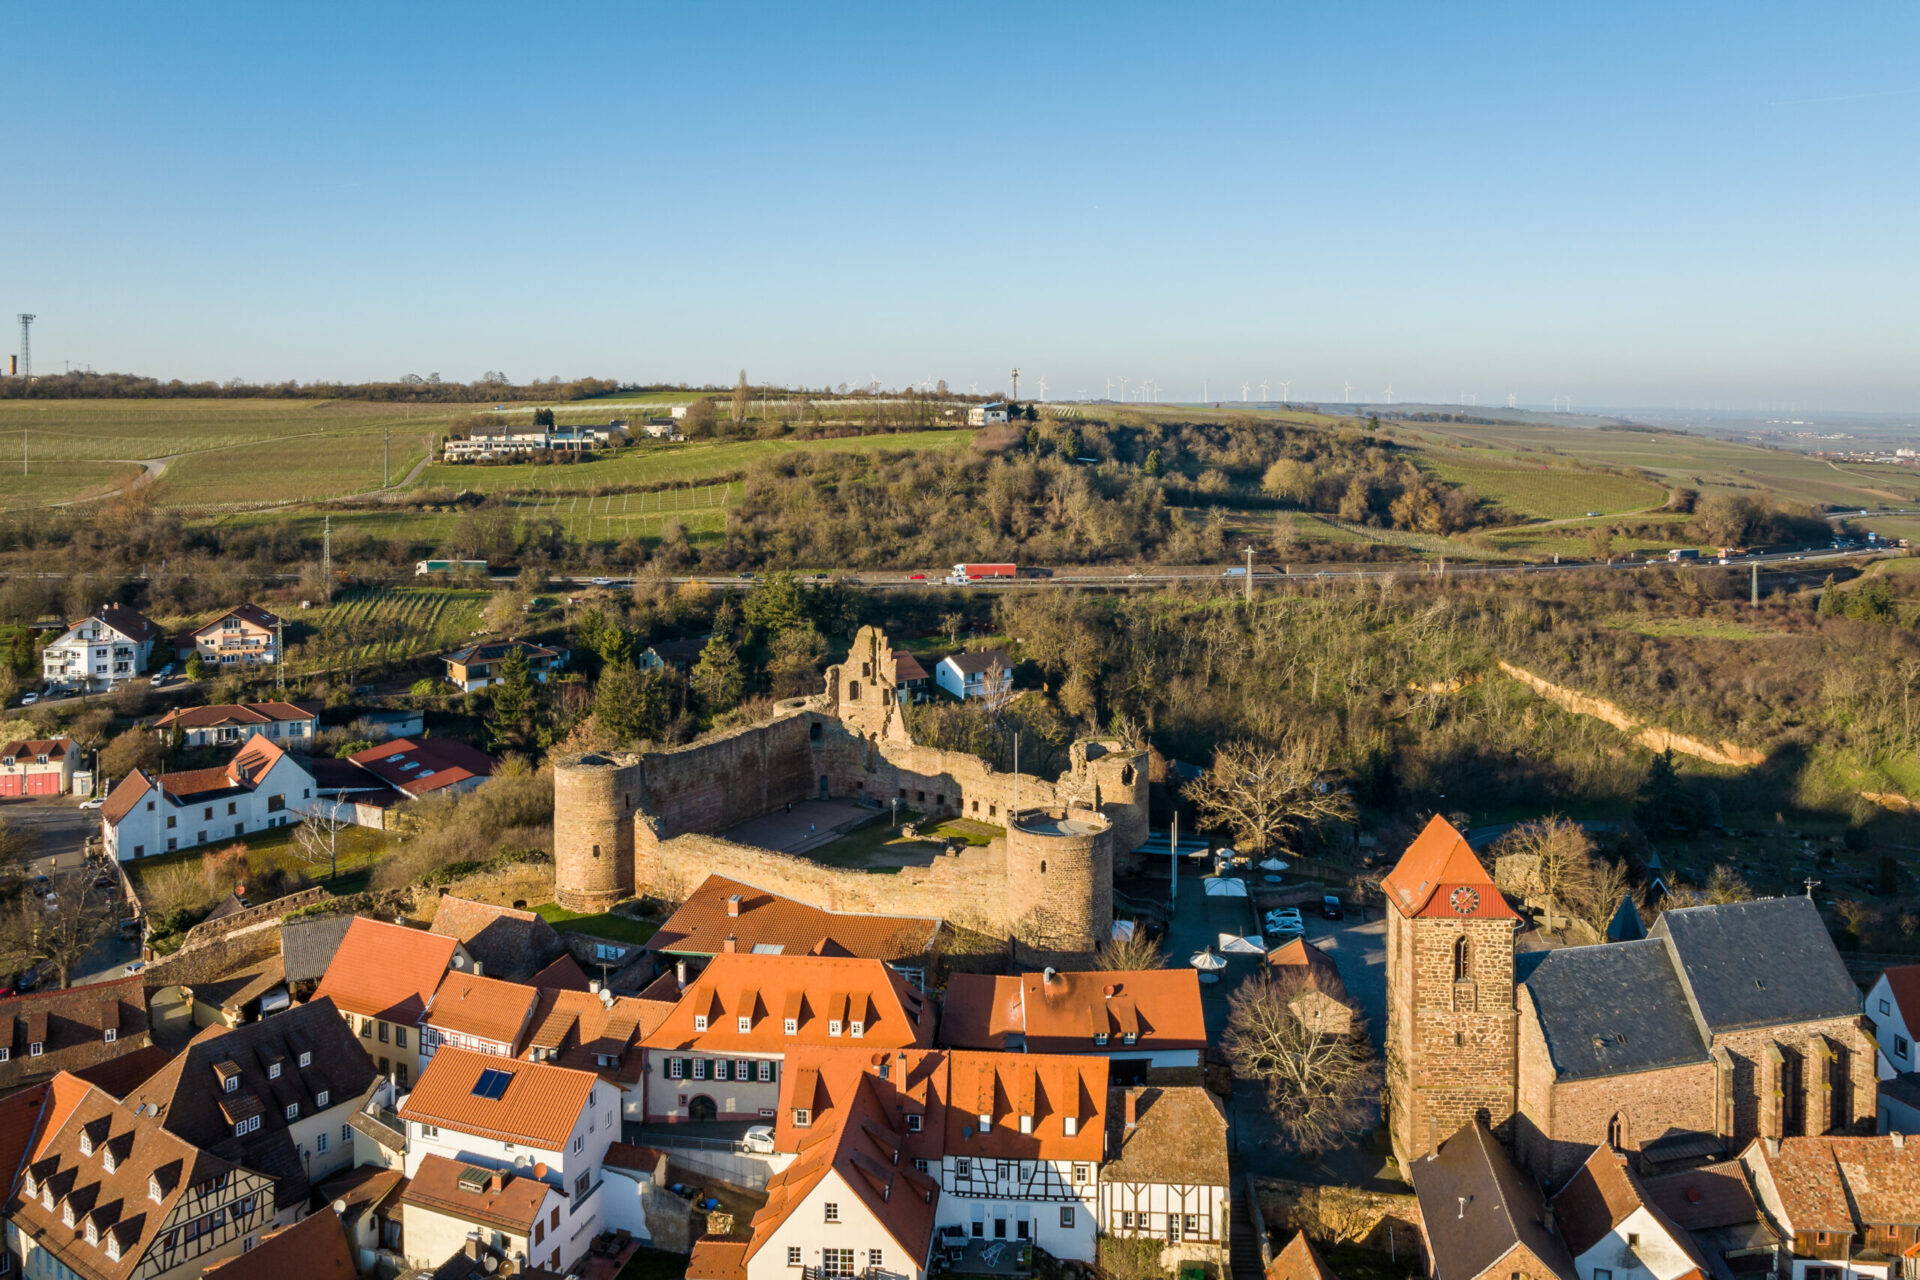 Luftaufnahme des deutschen Dorfes Neuleiningen mit mittelalterlichen Burgruinen, umgeben von modernen Häusern und üppigem Grün, unter einem klaren blauen Himmel.